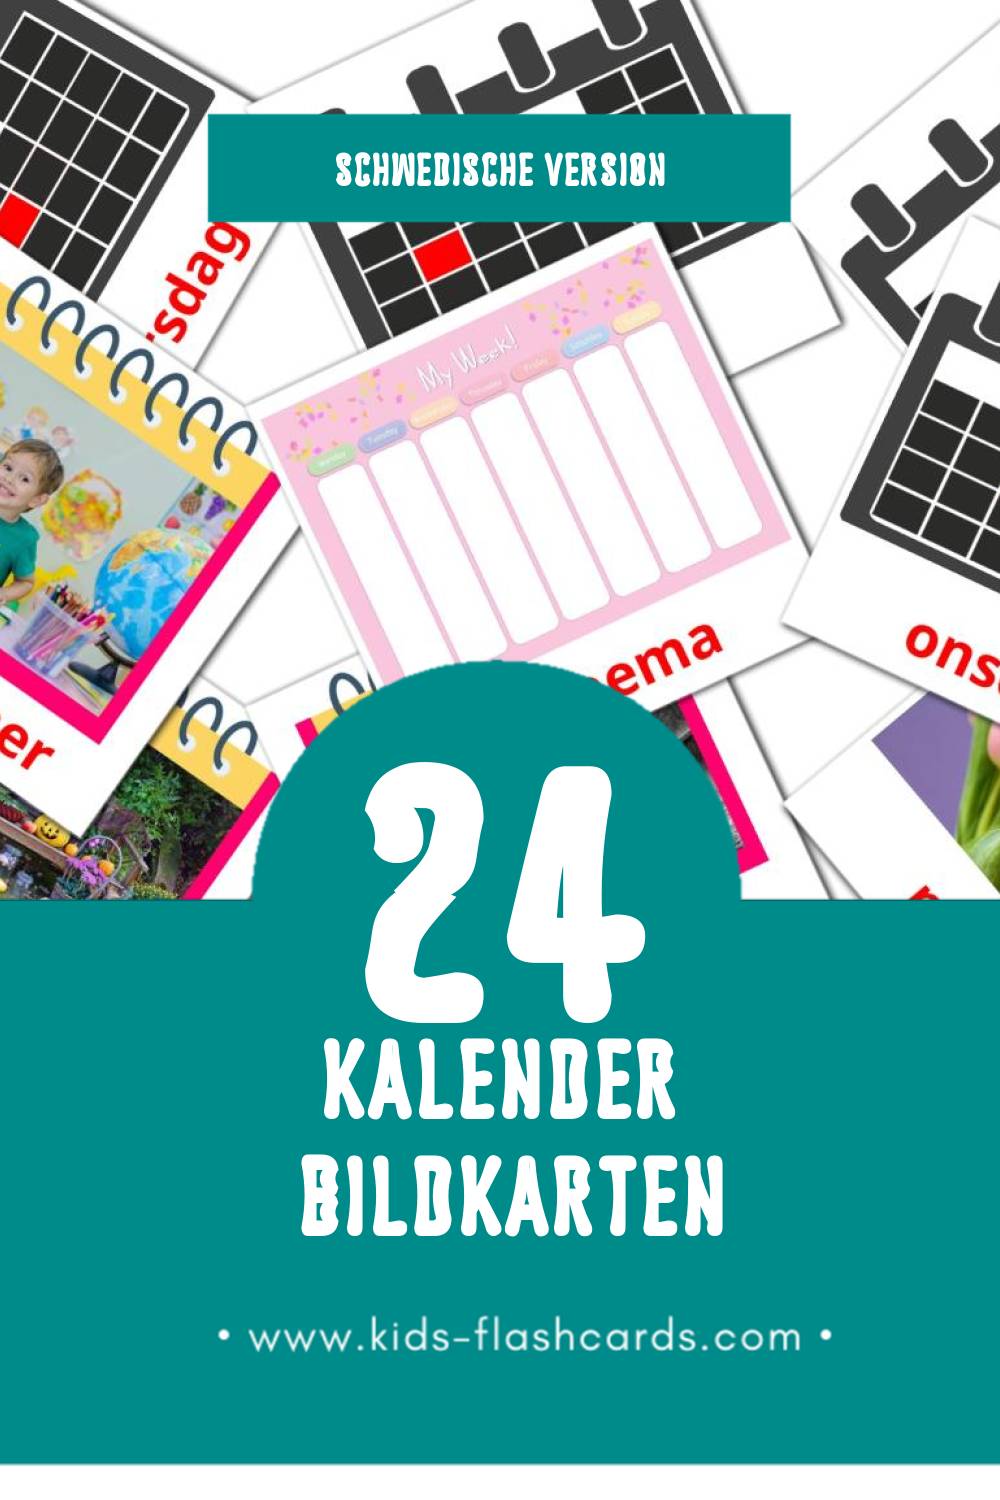 Visual Kalender Flashcards für Kleinkinder (24 Karten in Schwedisch)